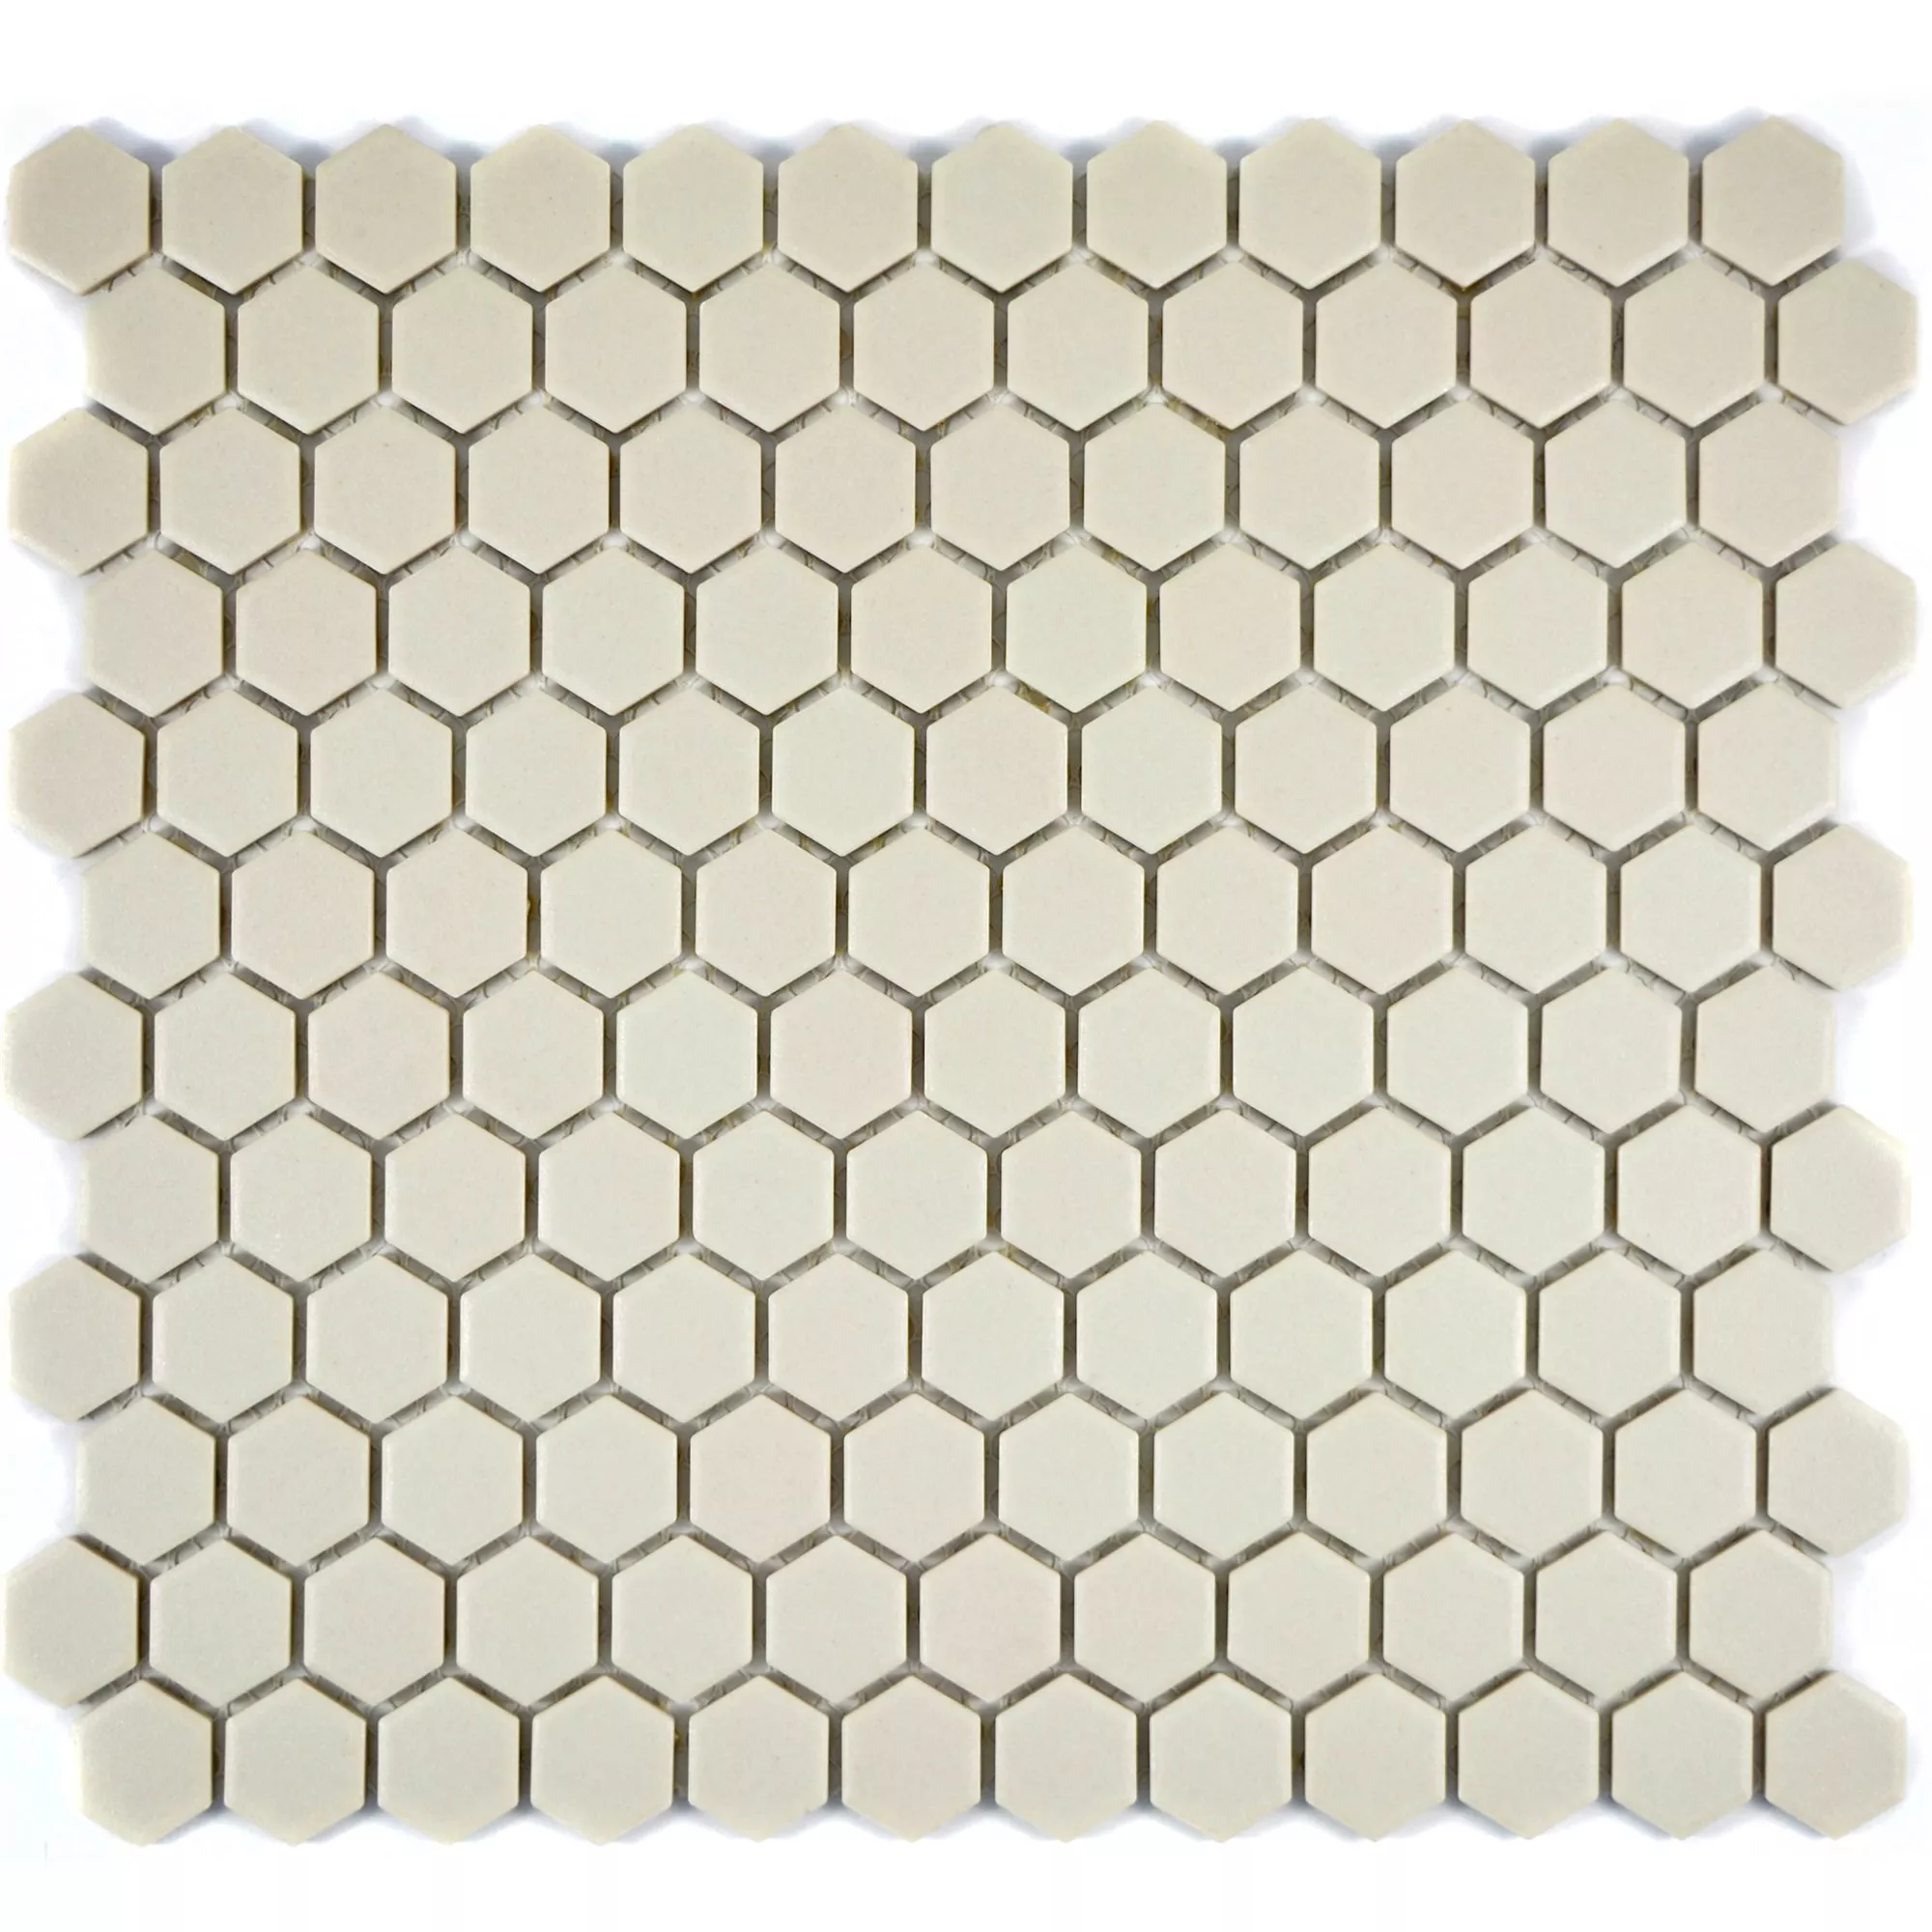 Ceramica Mosaico Hexagon Zeinal Non Smaltato Beige Chiaro R10B